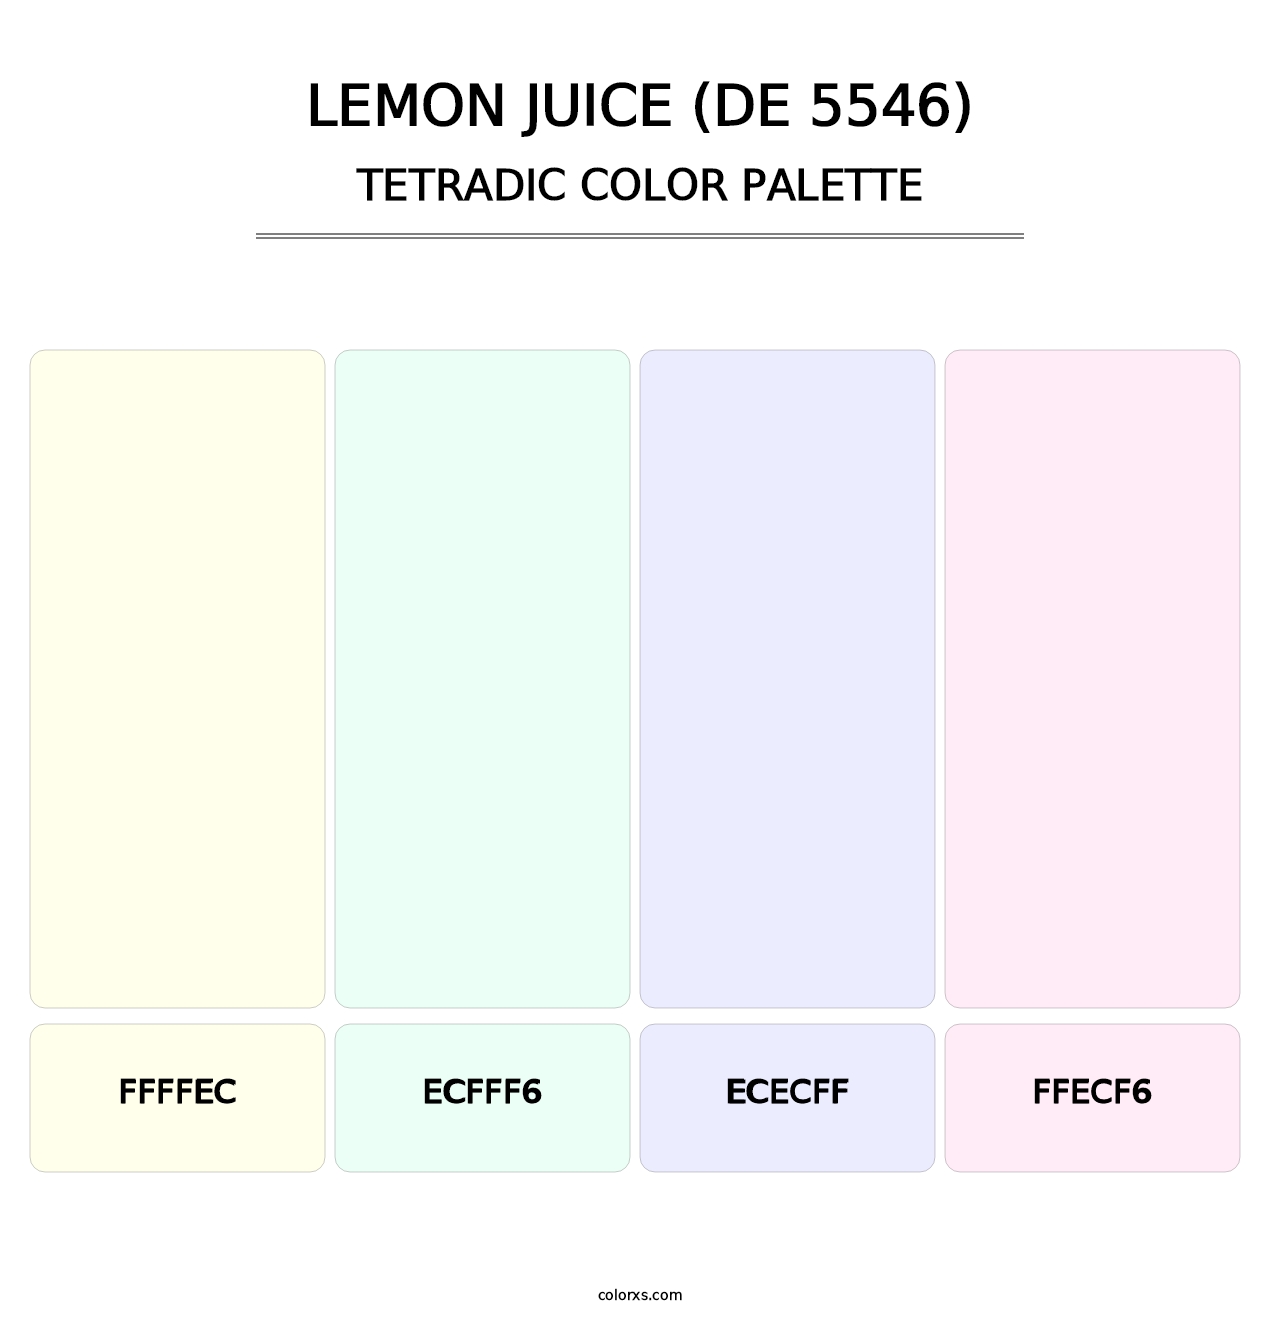 Lemon Juice (DE 5546) - Tetradic Color Palette